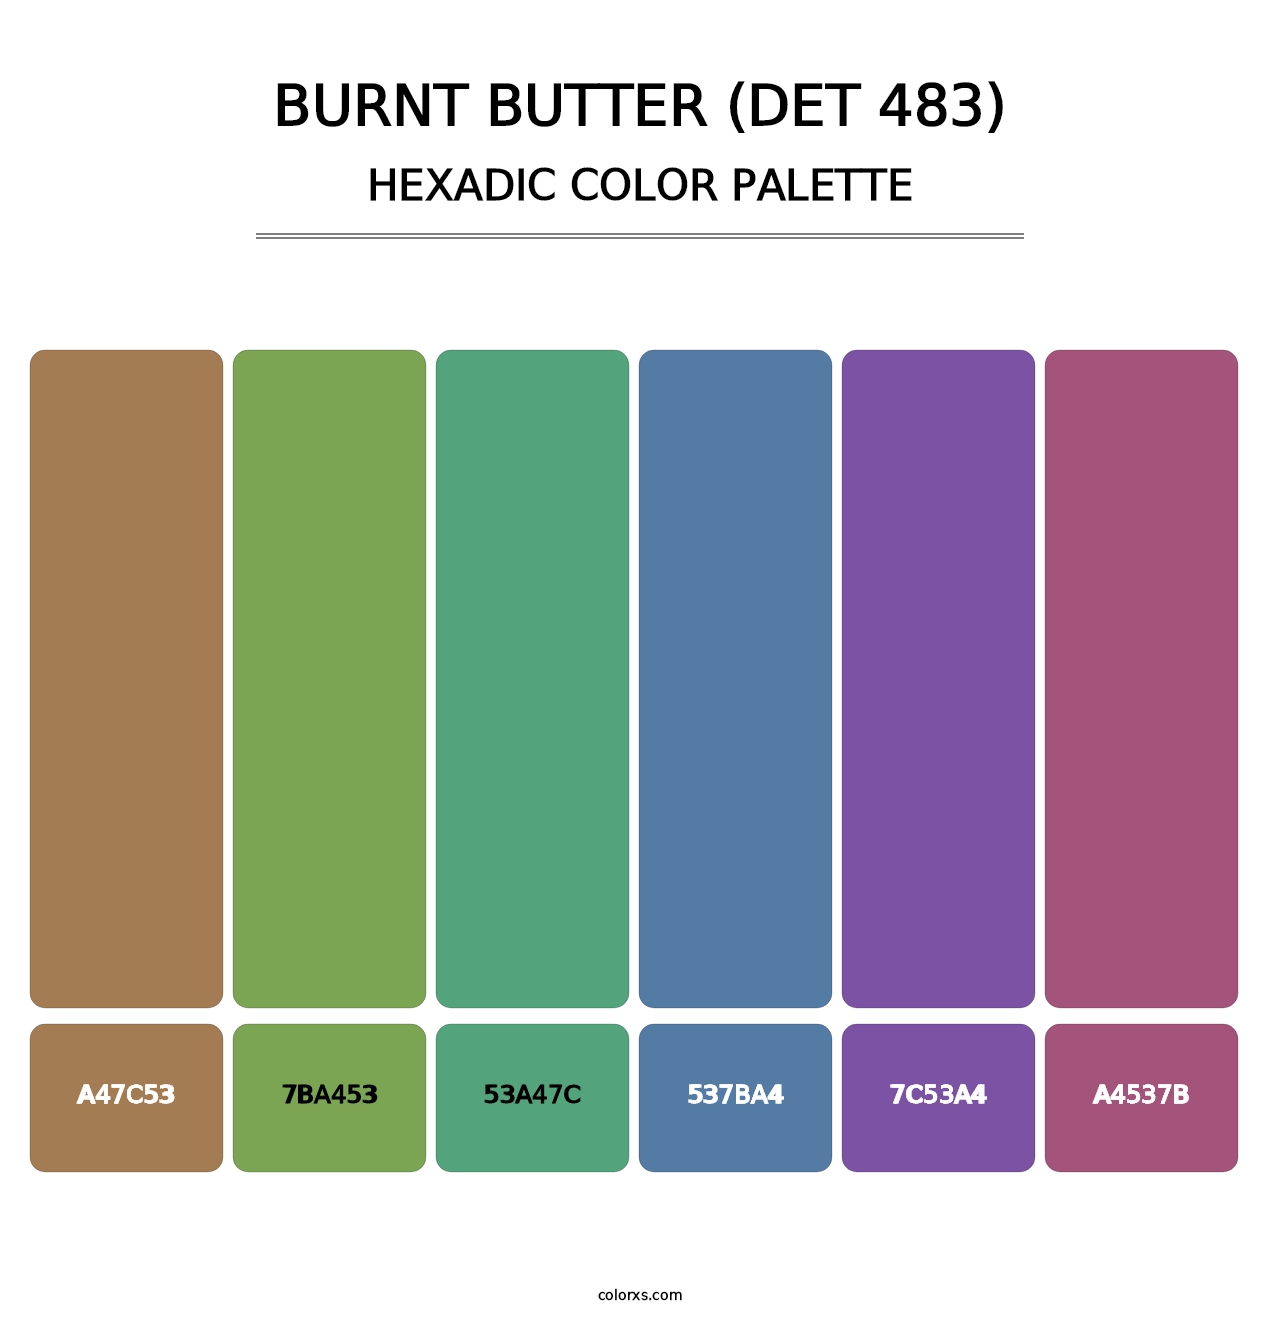 Burnt Butter (DET 483) - Hexadic Color Palette